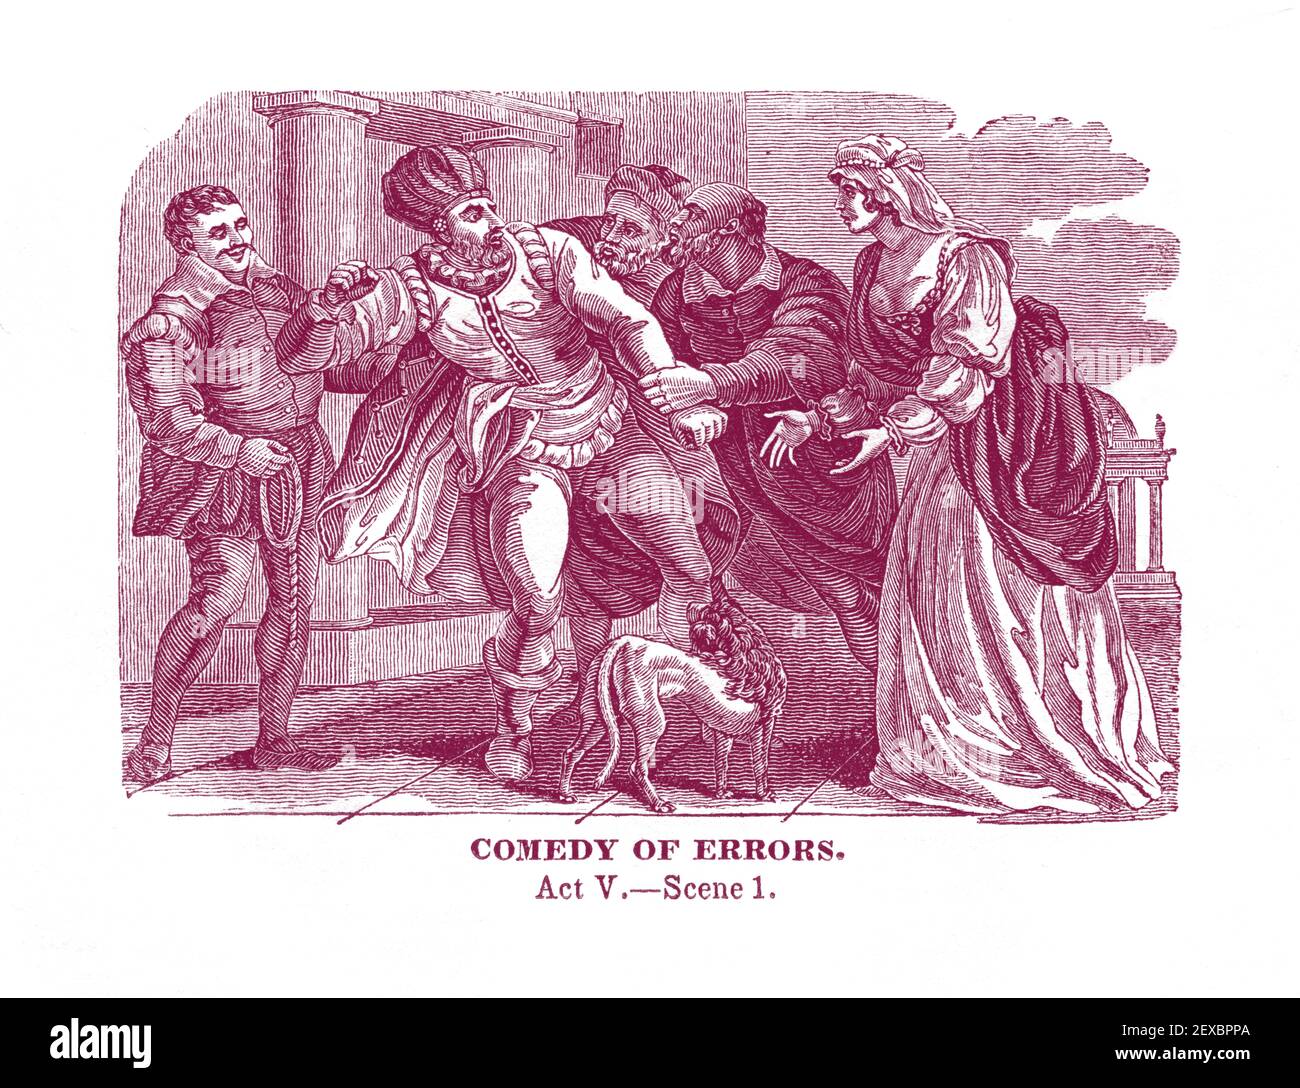 Un'incisione del 1834 che raffigura una scena (scena 1 di Act V) della commedia degli errori di William Shakespeare, colorata digitalmente. Foto Stock